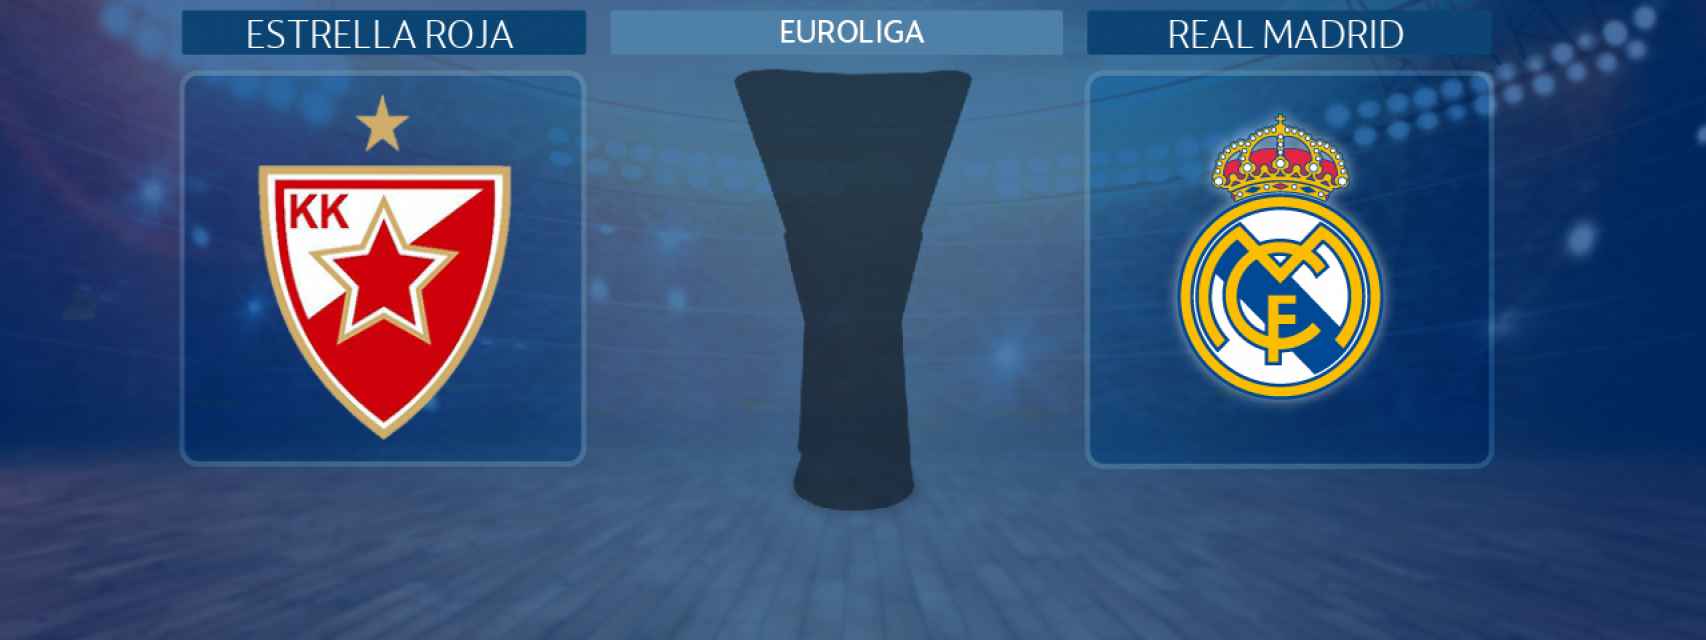 Estrella Roja - Real Madrid, partido de la Euroliga